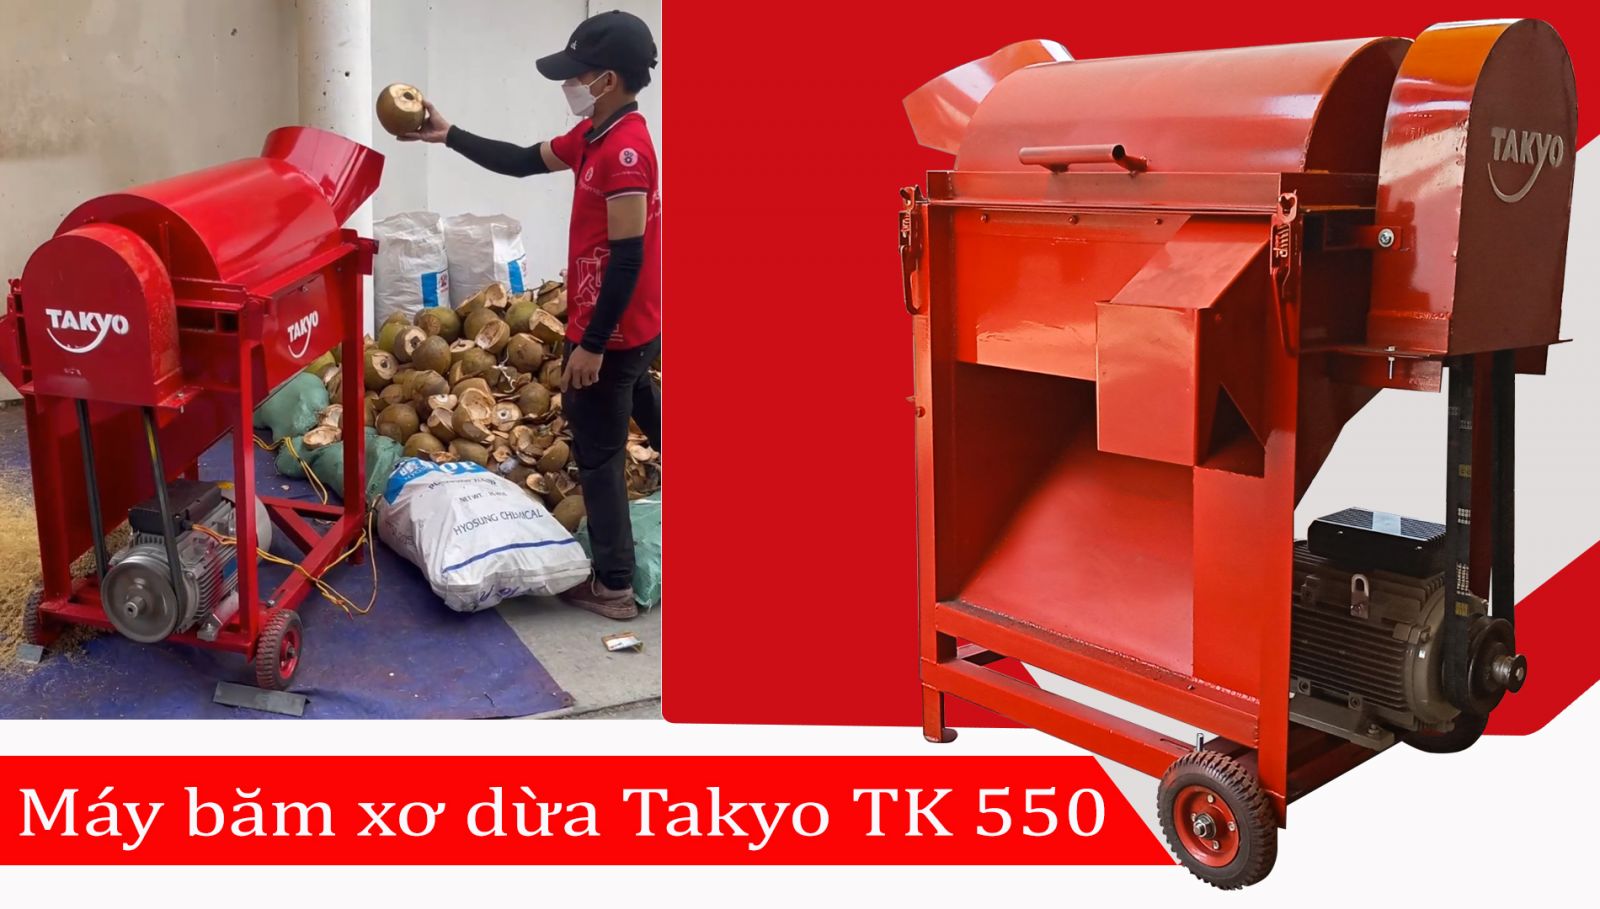 Máy băm xơ dừa Takyo TK 550